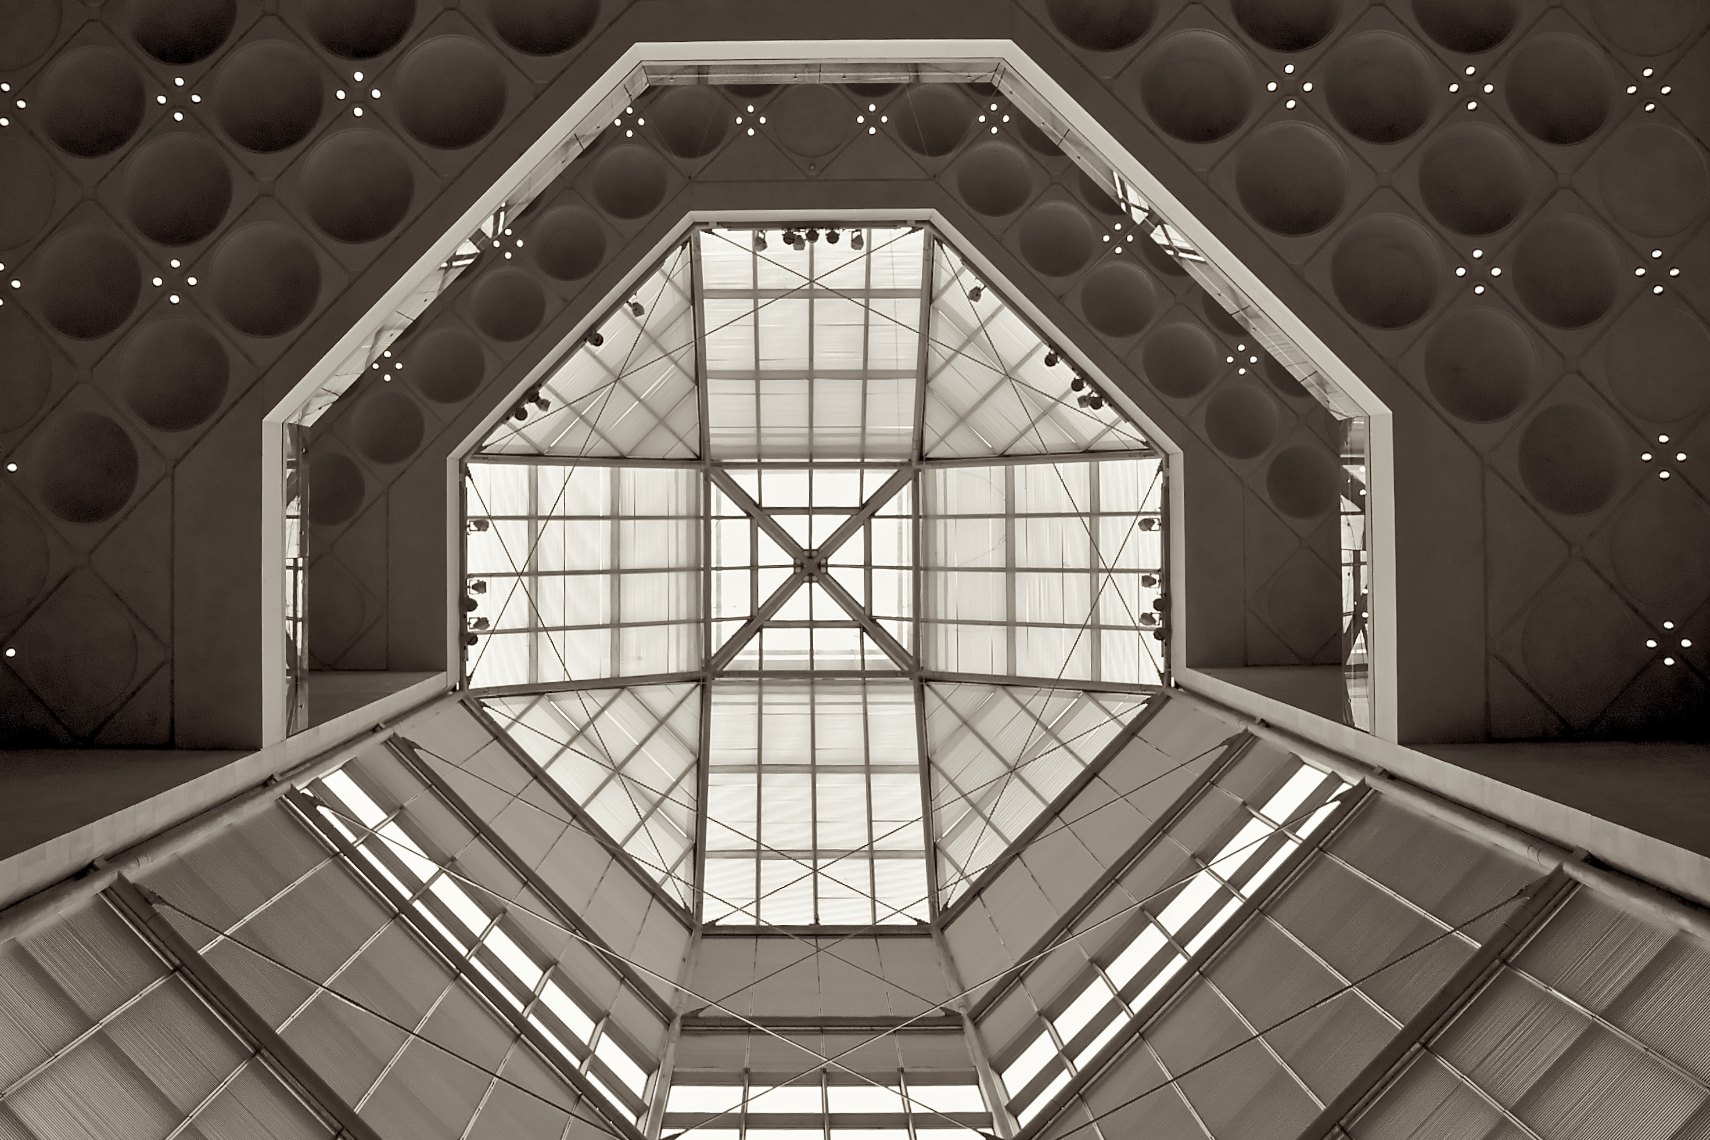 Qatar Doha Museum of Islamic Art interior black and white Spaceship